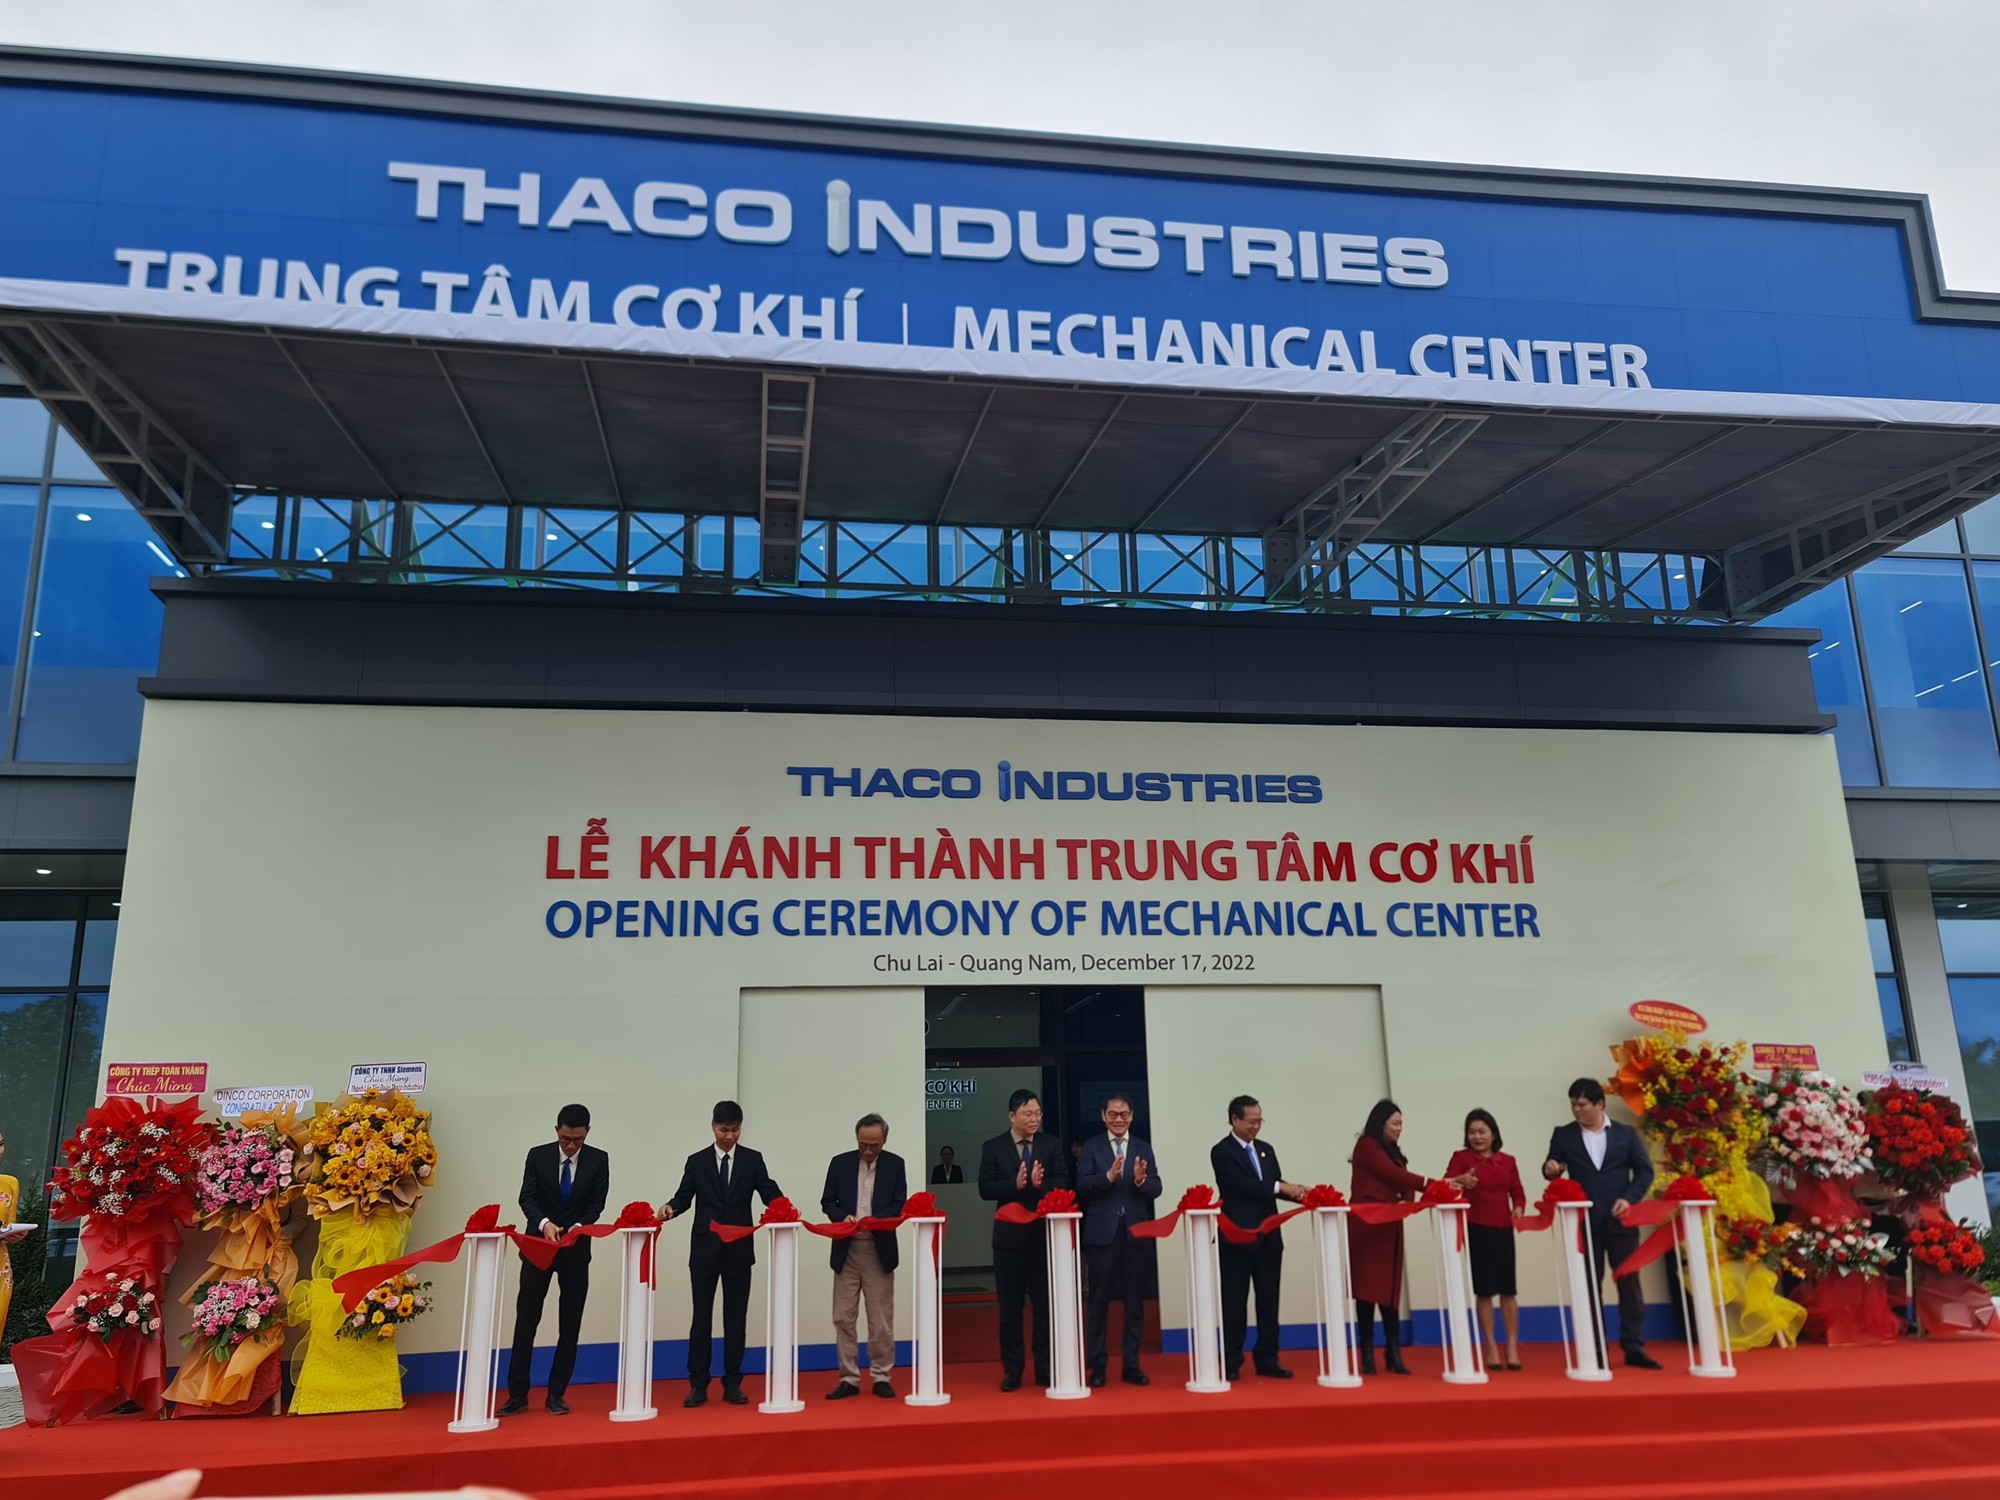 Tỷ phú Trần Bá Dương thành lập Công ty Tập đoàn Công nghiệp Trường Hải - Thaco Industries vốn đầu tư hơn 550 triệu USD - Ảnh 2.